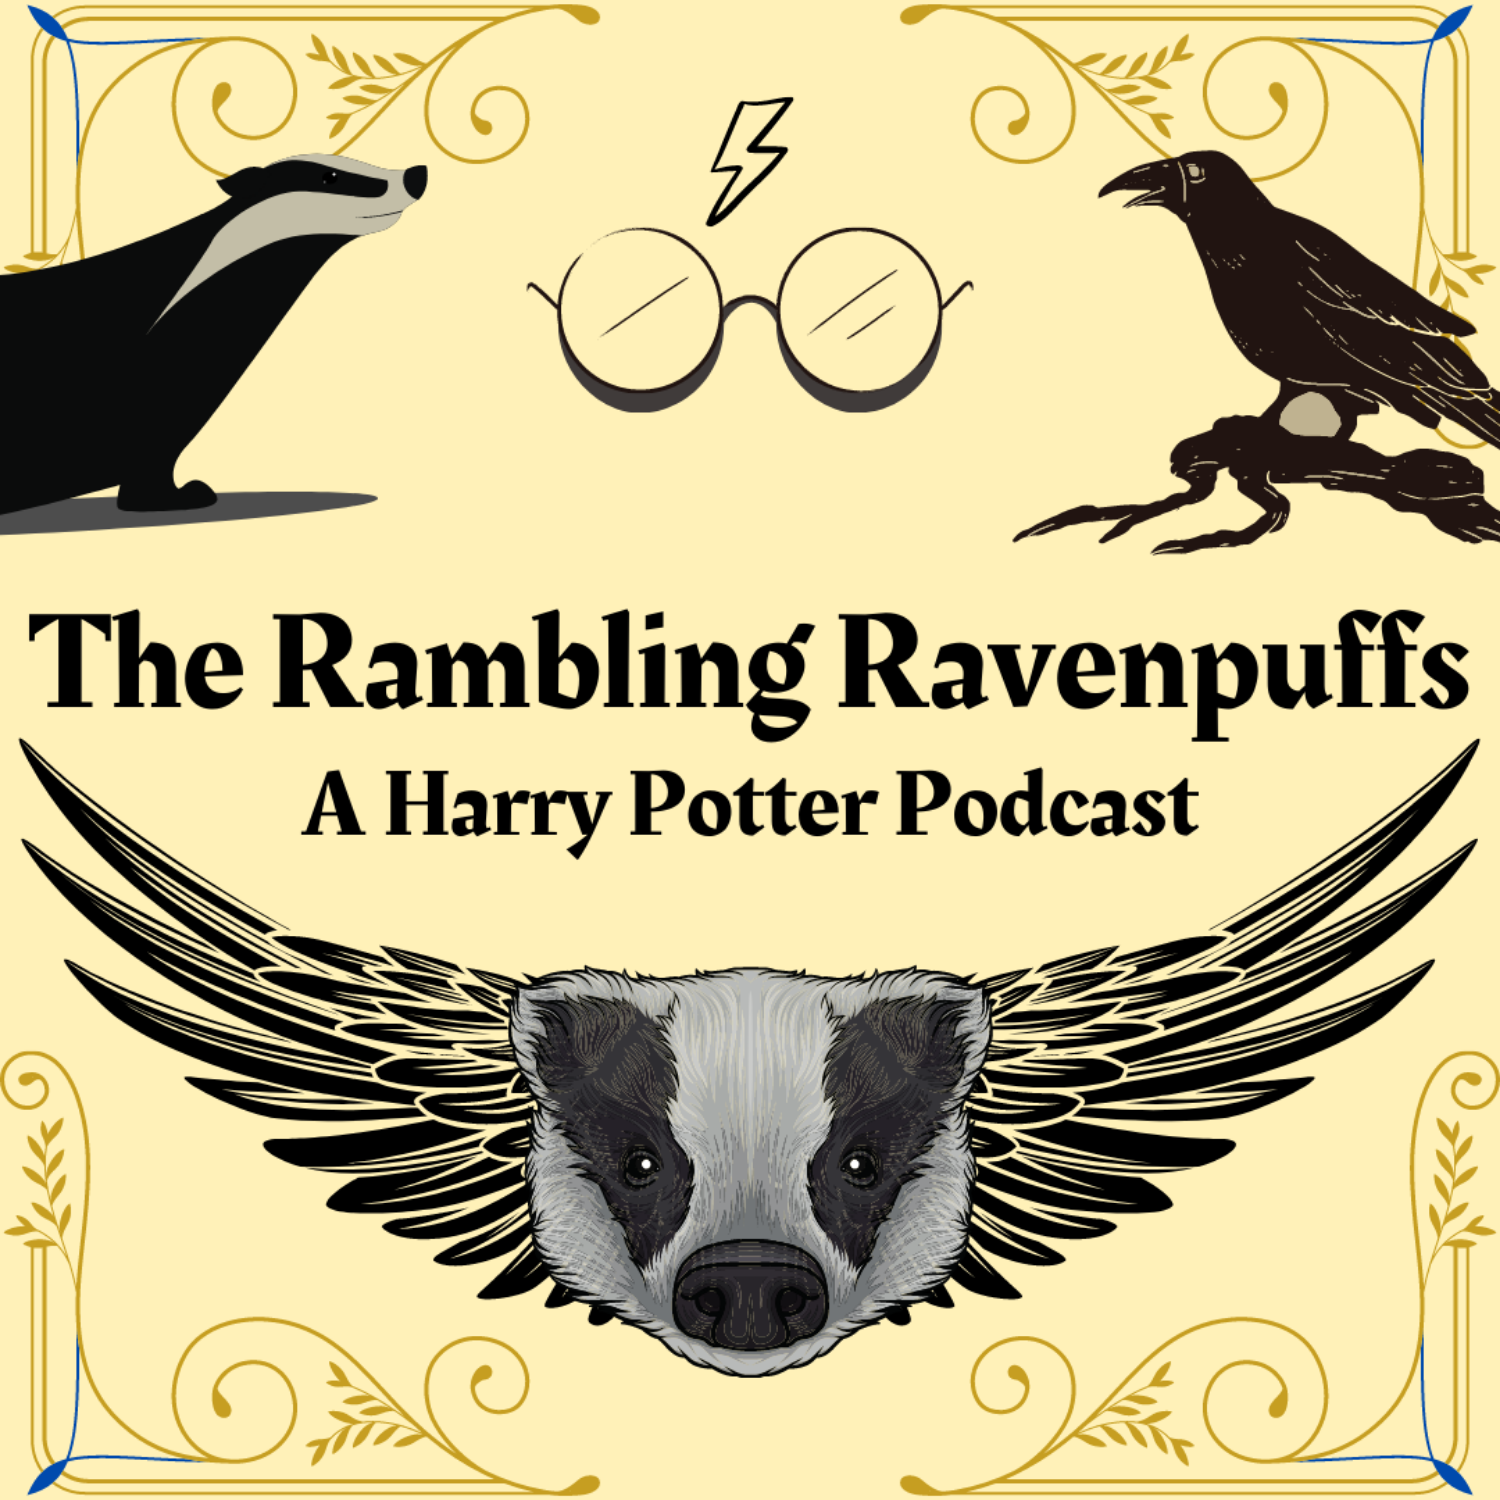 The Rambling Ravenpuffs